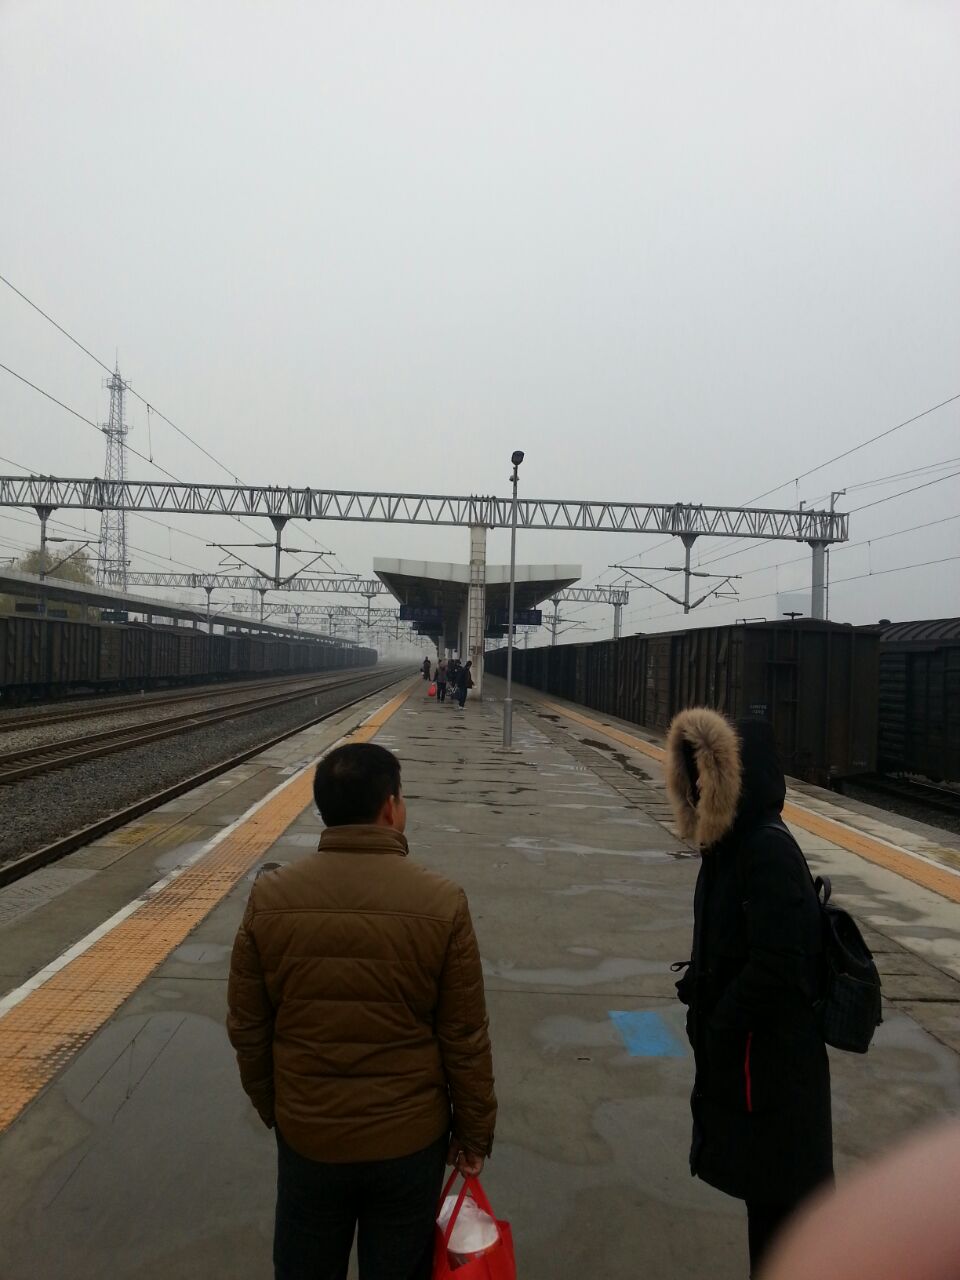 【携程攻略】内乡站,河南省南阳市内乡火车票是一个县级市的小火车站